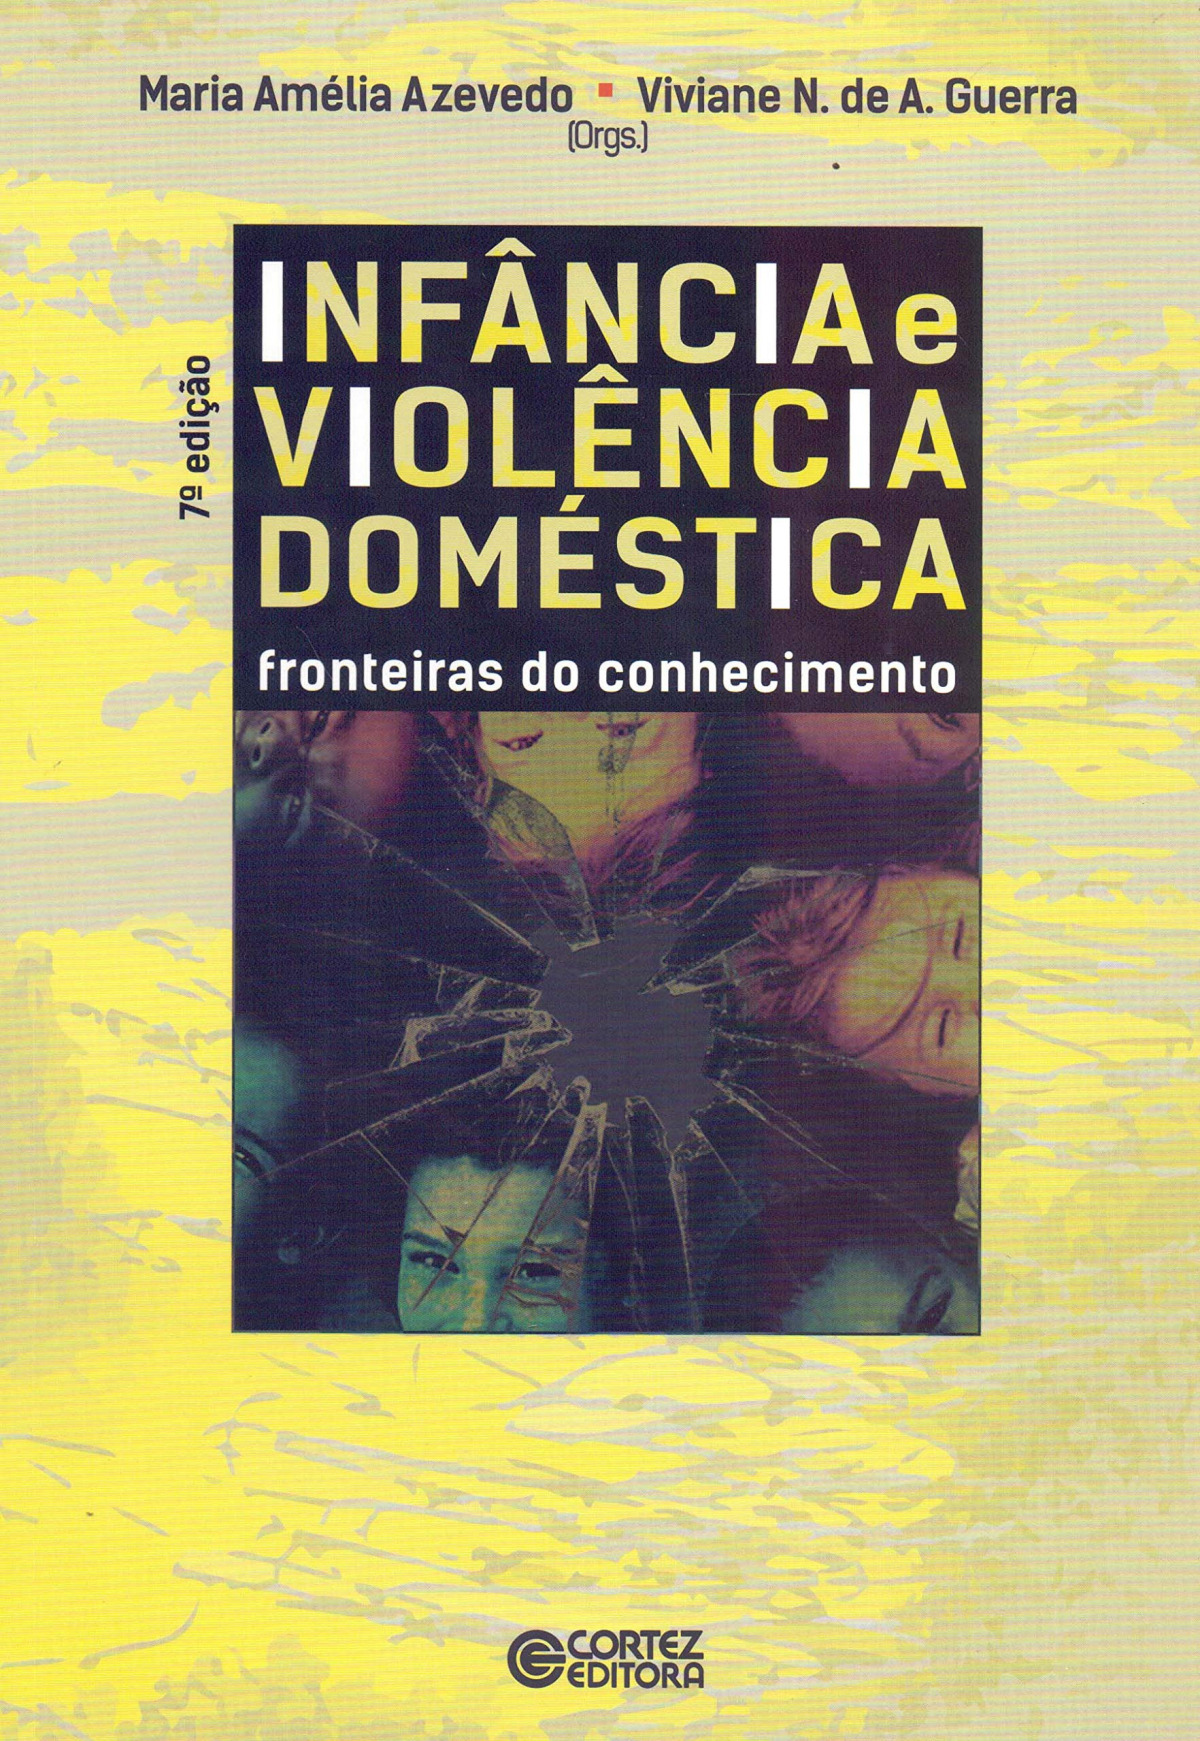 Infància e violència doméstica: fronteiras do conhecimento 9788524924194